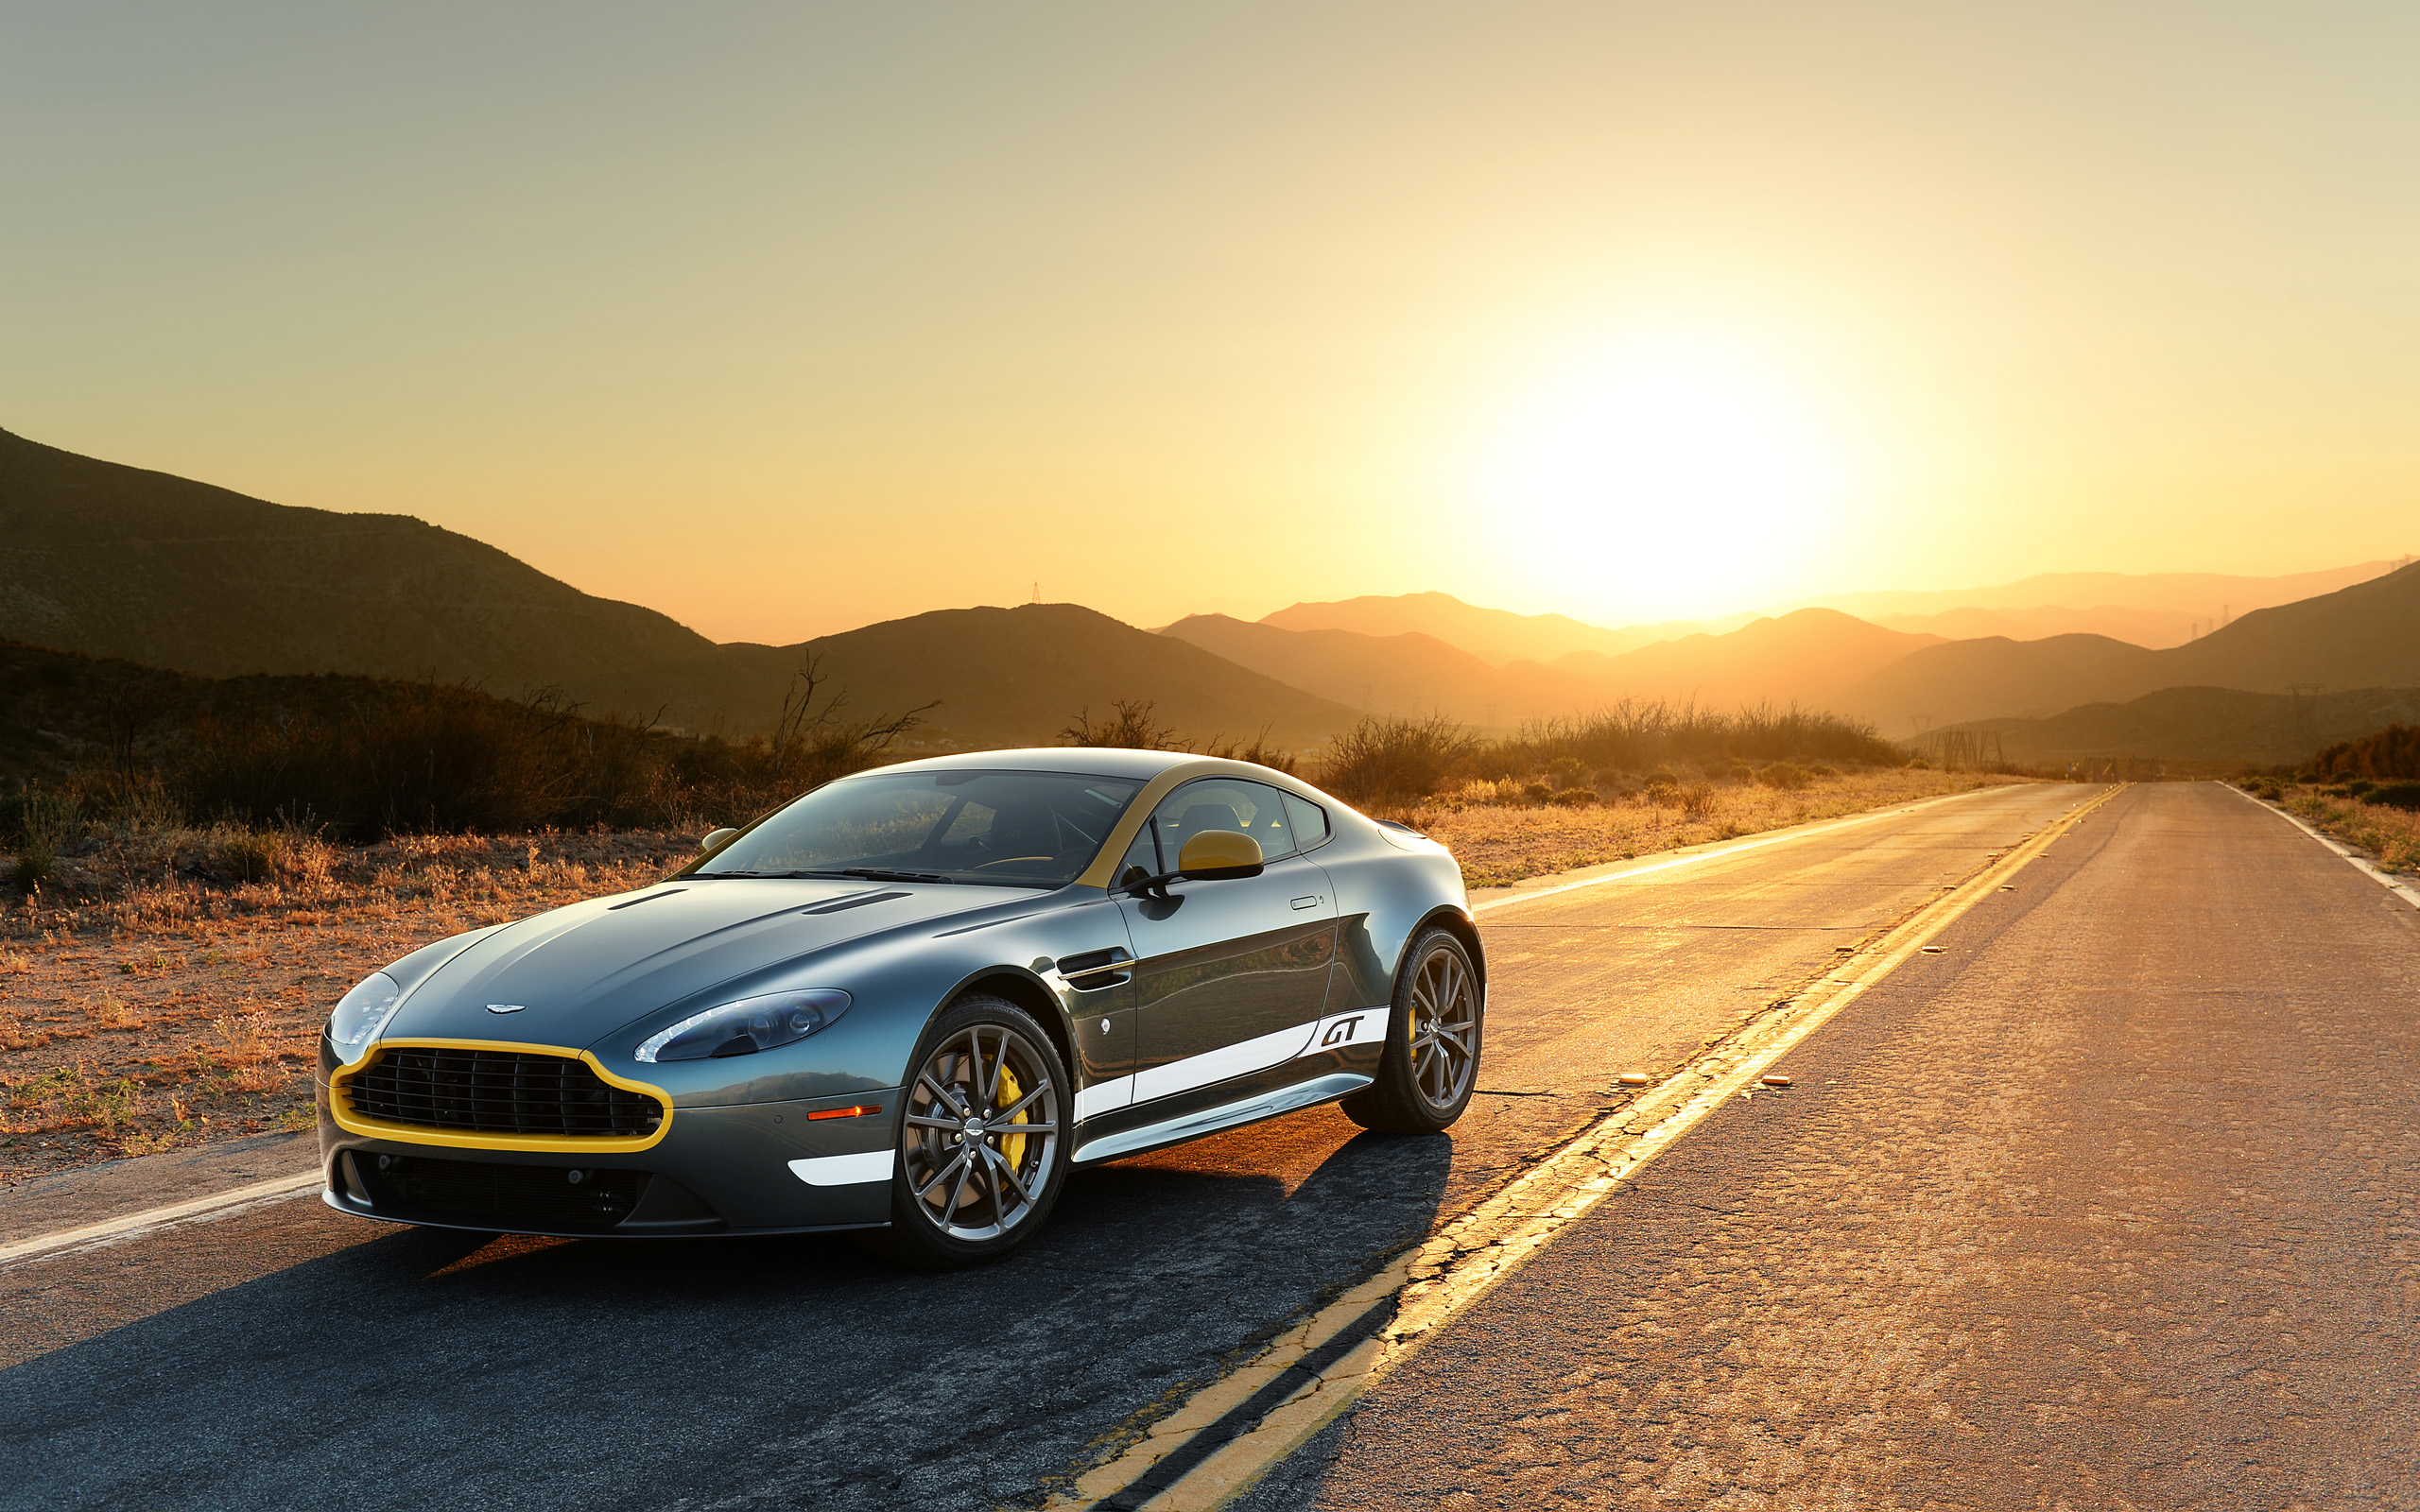  2015 Aston Martin V8 Vantage GT Wallpaper.